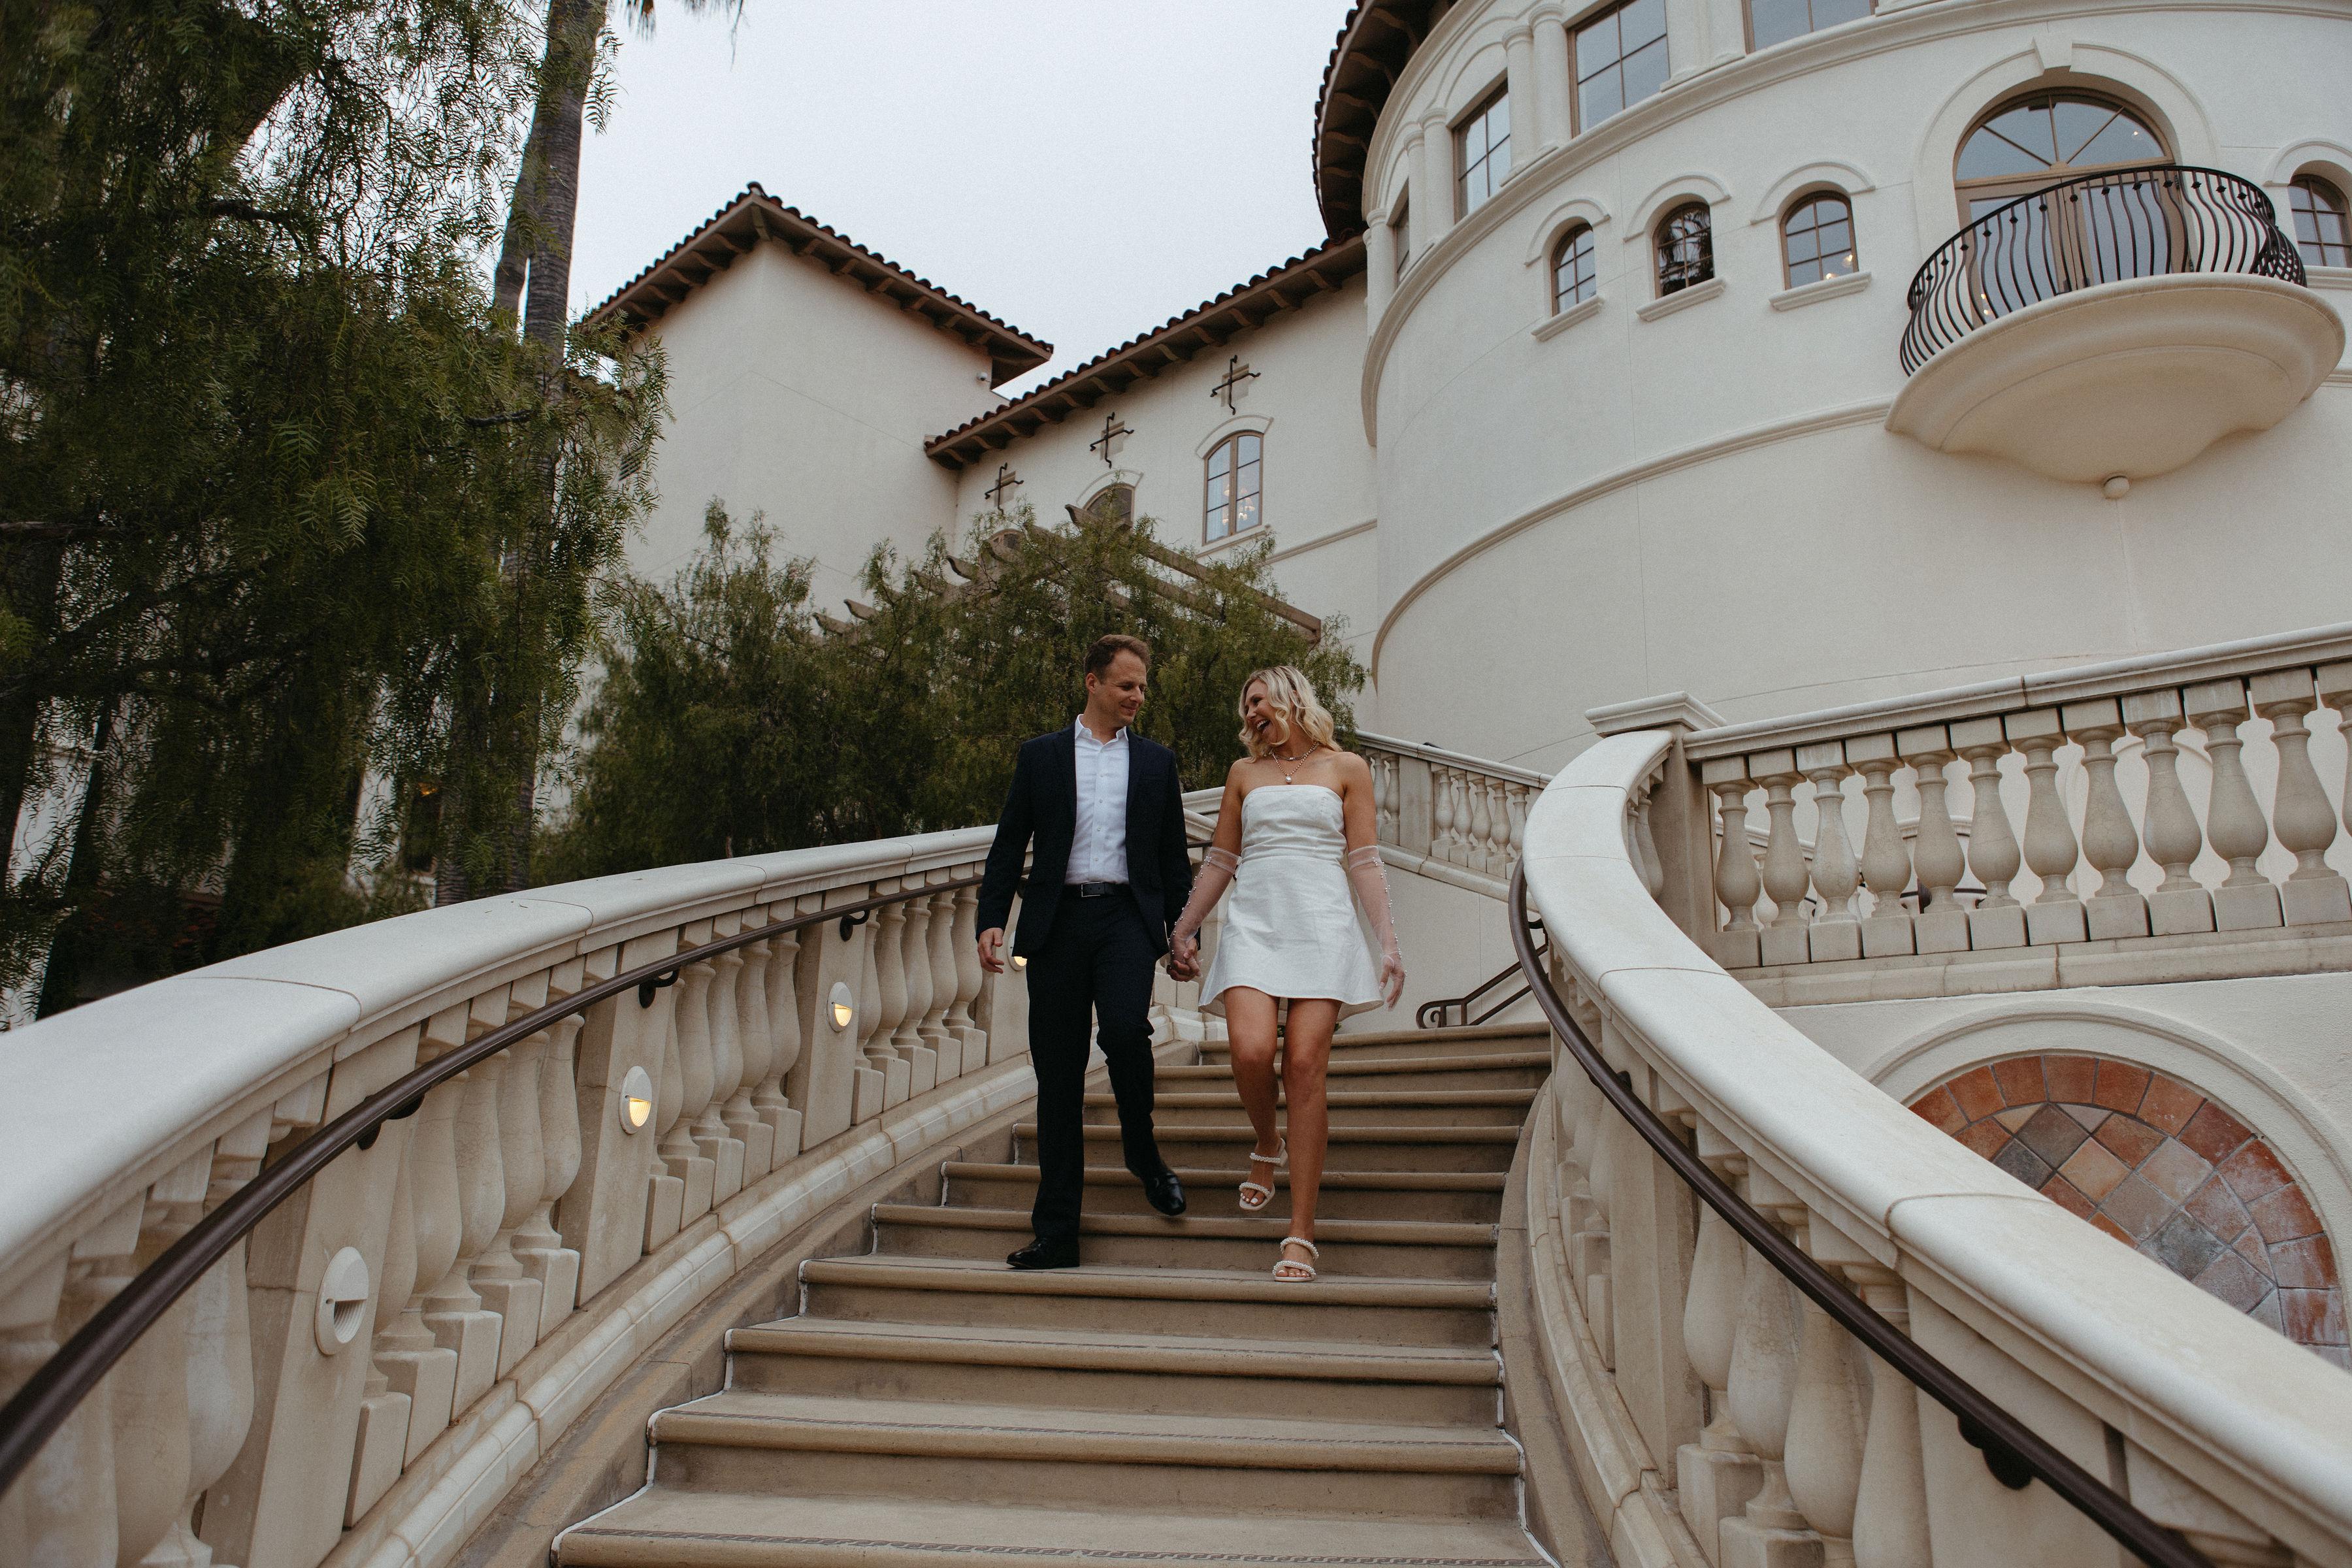 The Wedding Website of Chelsea Bowers and Derek Bergfeld